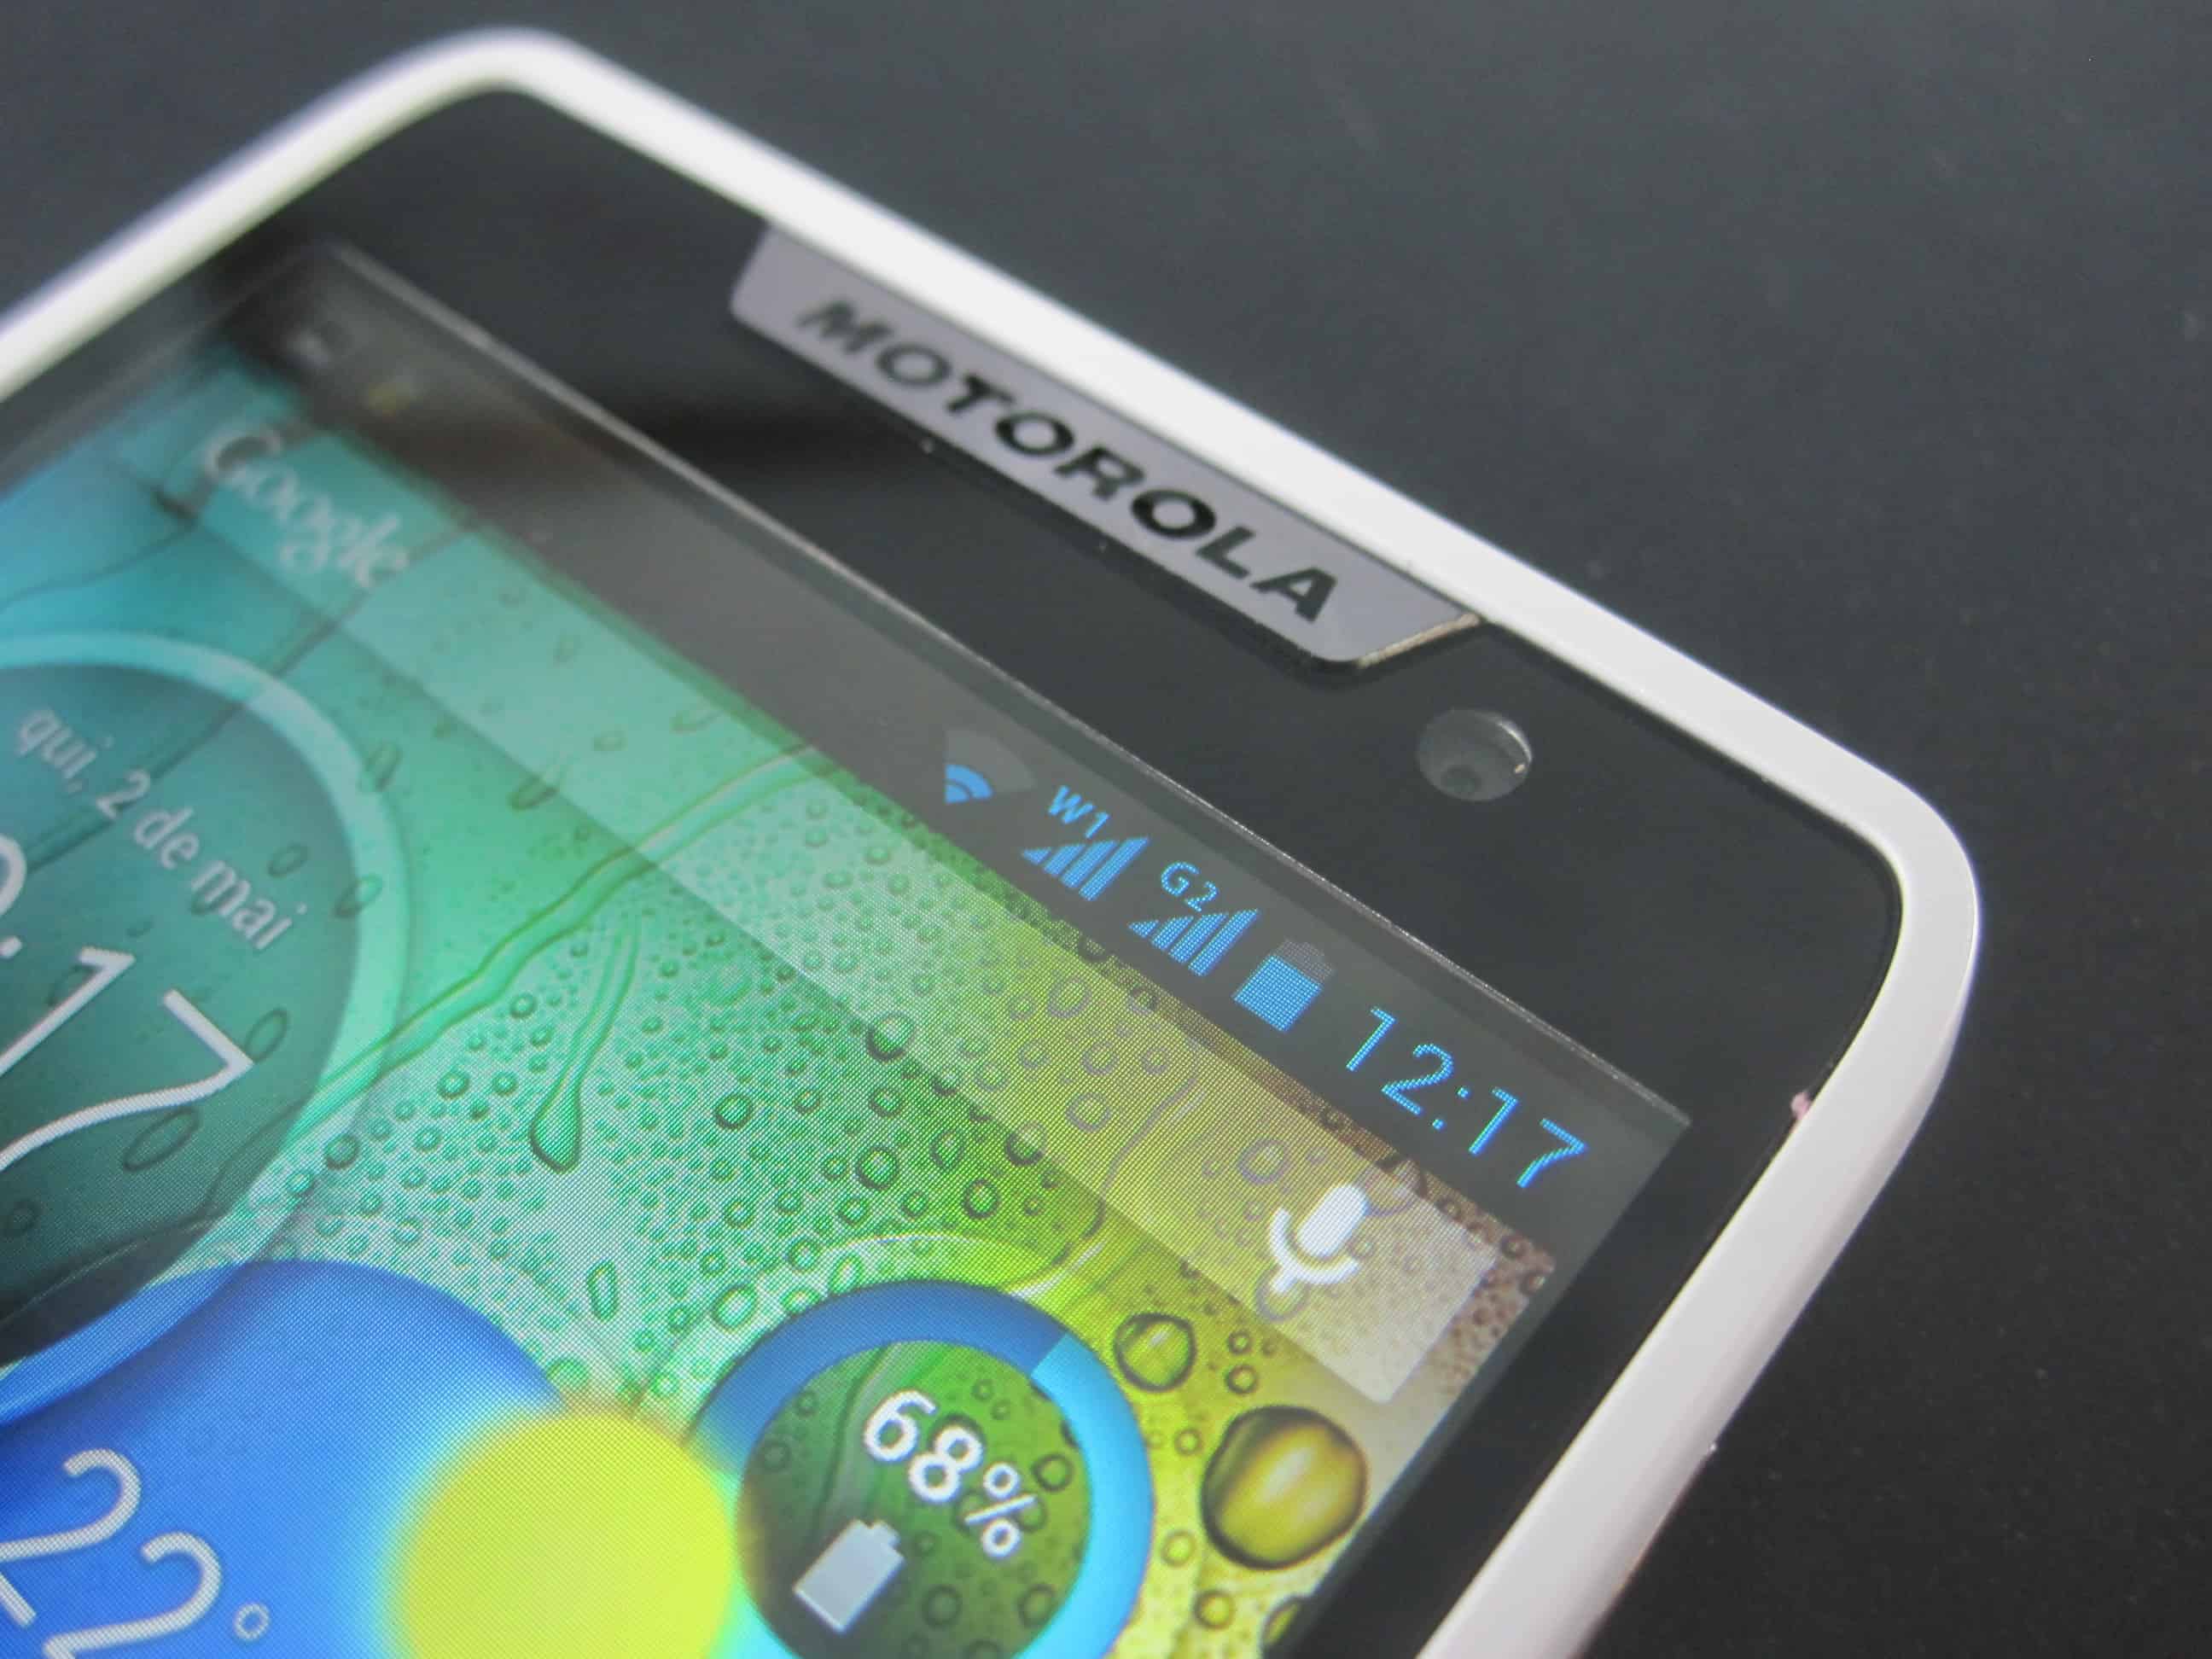 Review do Motorola RAZR D3 - Potência que cabe no bolso 25